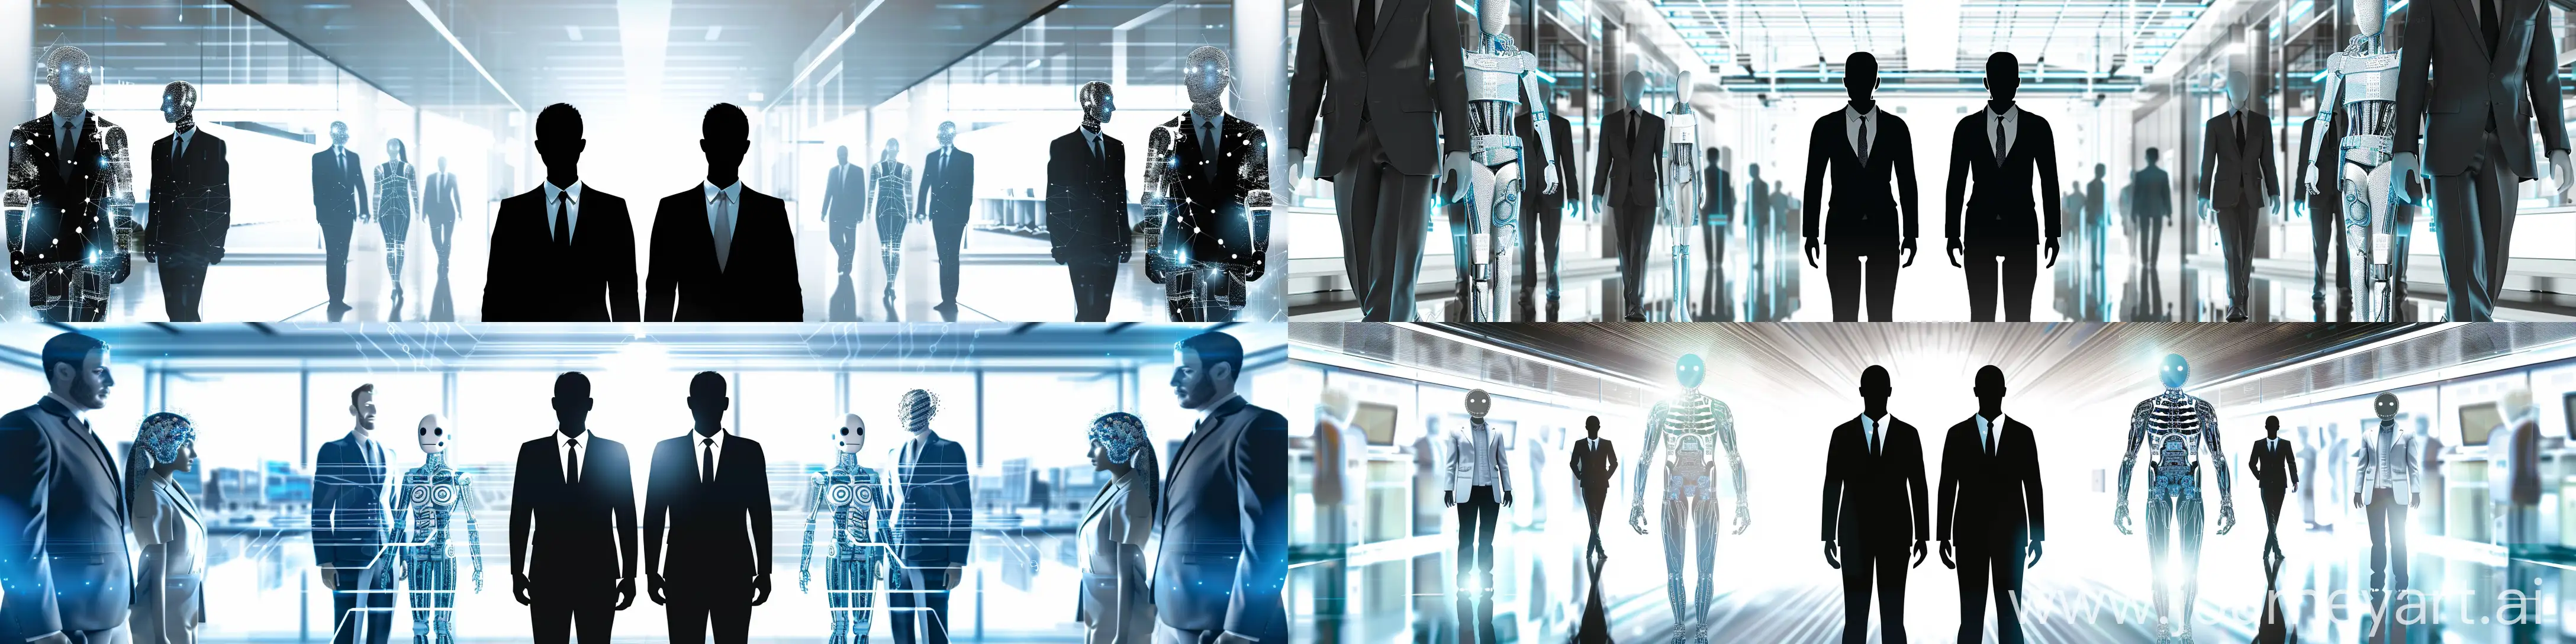 Futuristic-AI-Agency-Executives-in-Minimalistic-Business-Setting